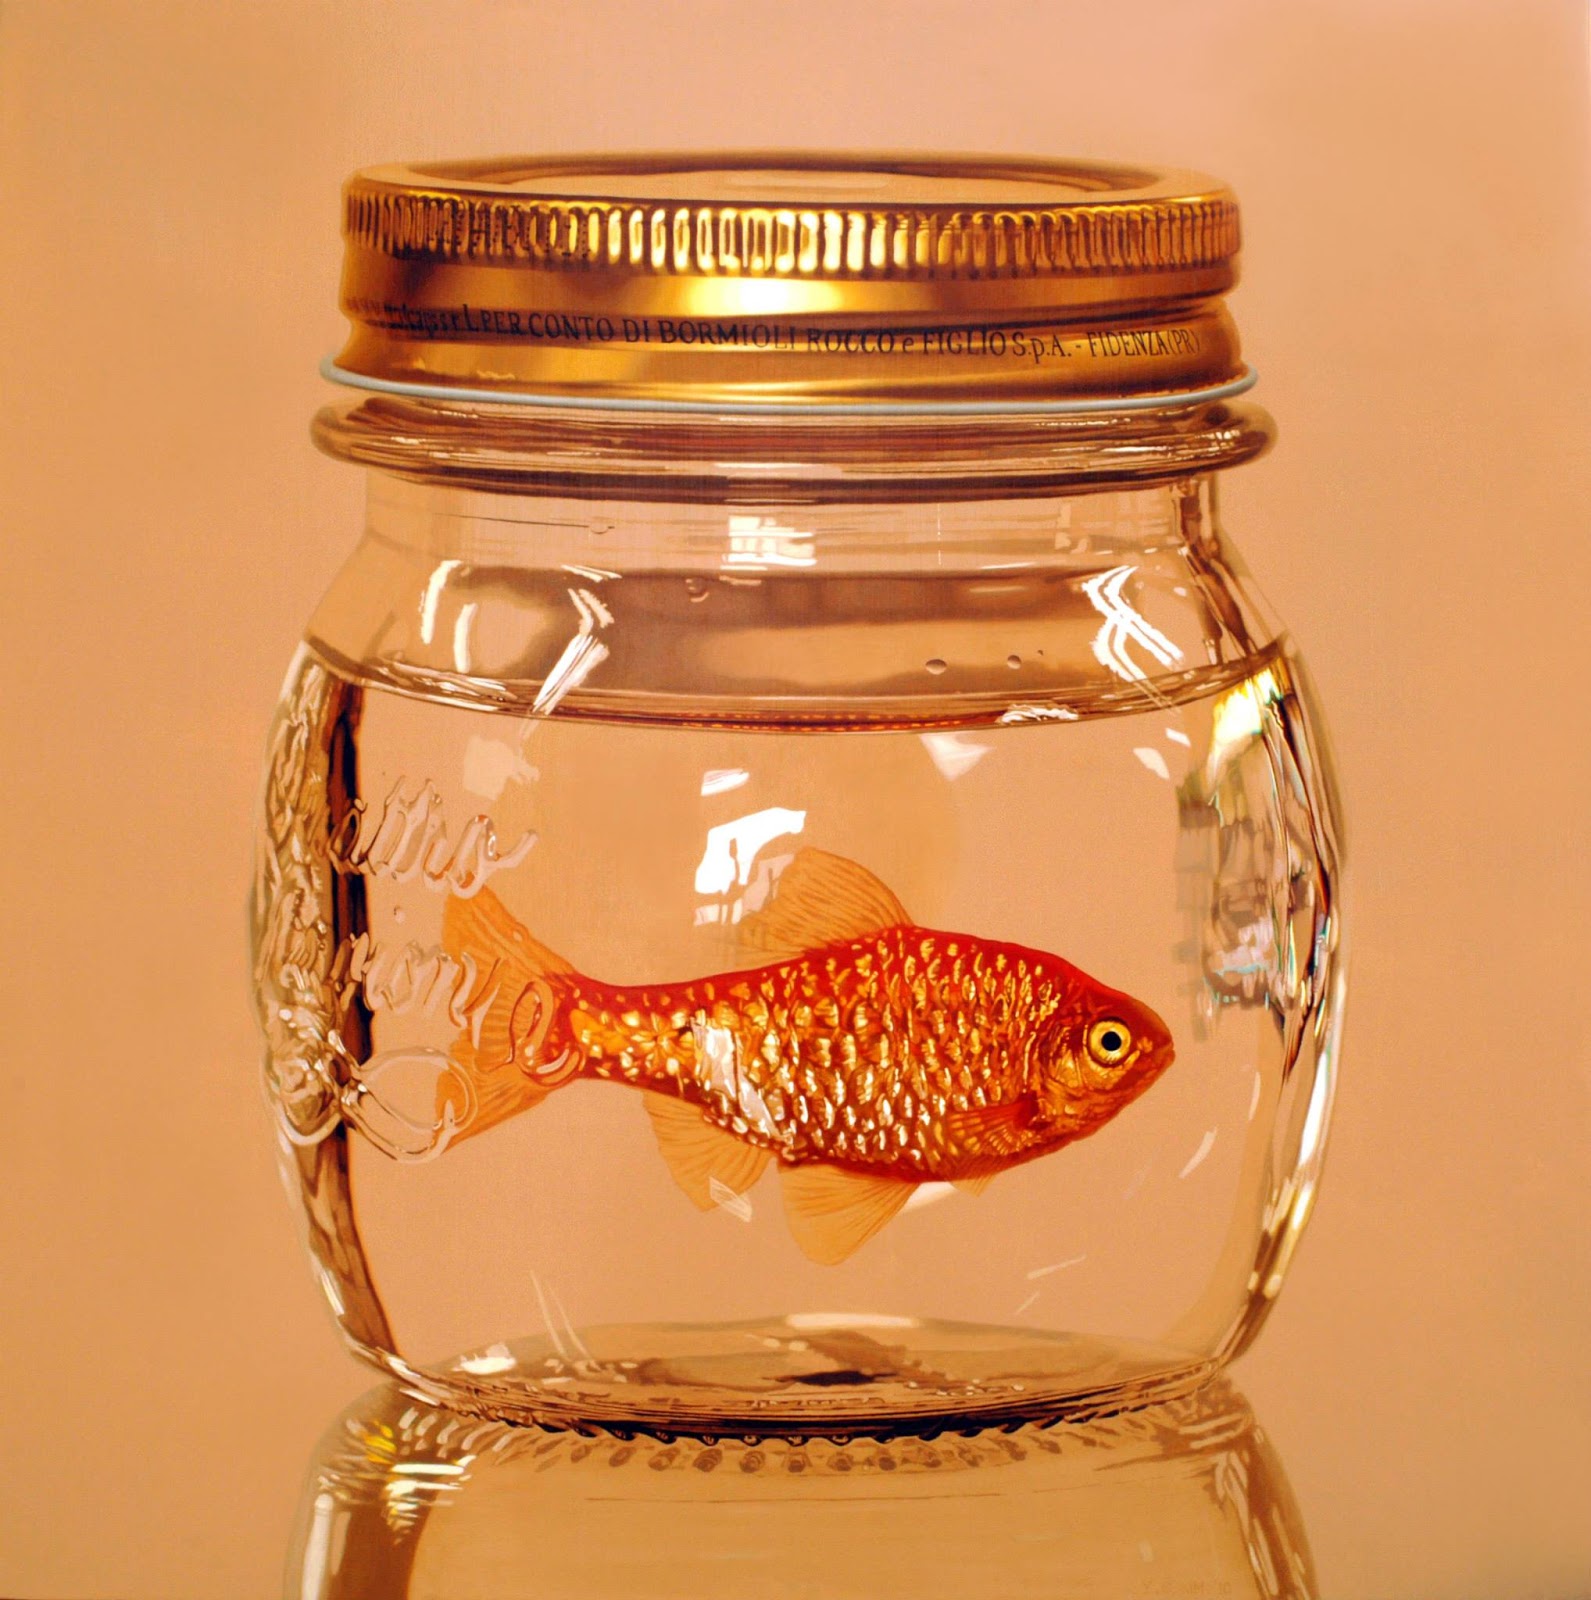 Рыба в банке как называется. Золотая рыбка. Рыбка в банке. Золотая рыбка в банке.